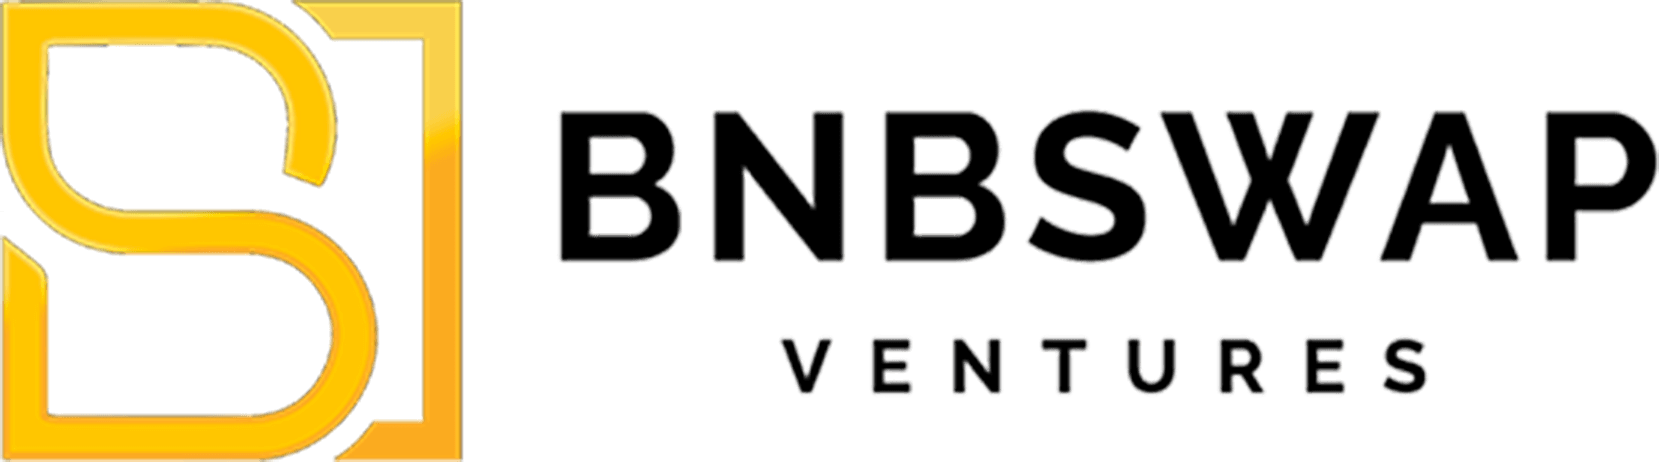 bnbswap ventures 1